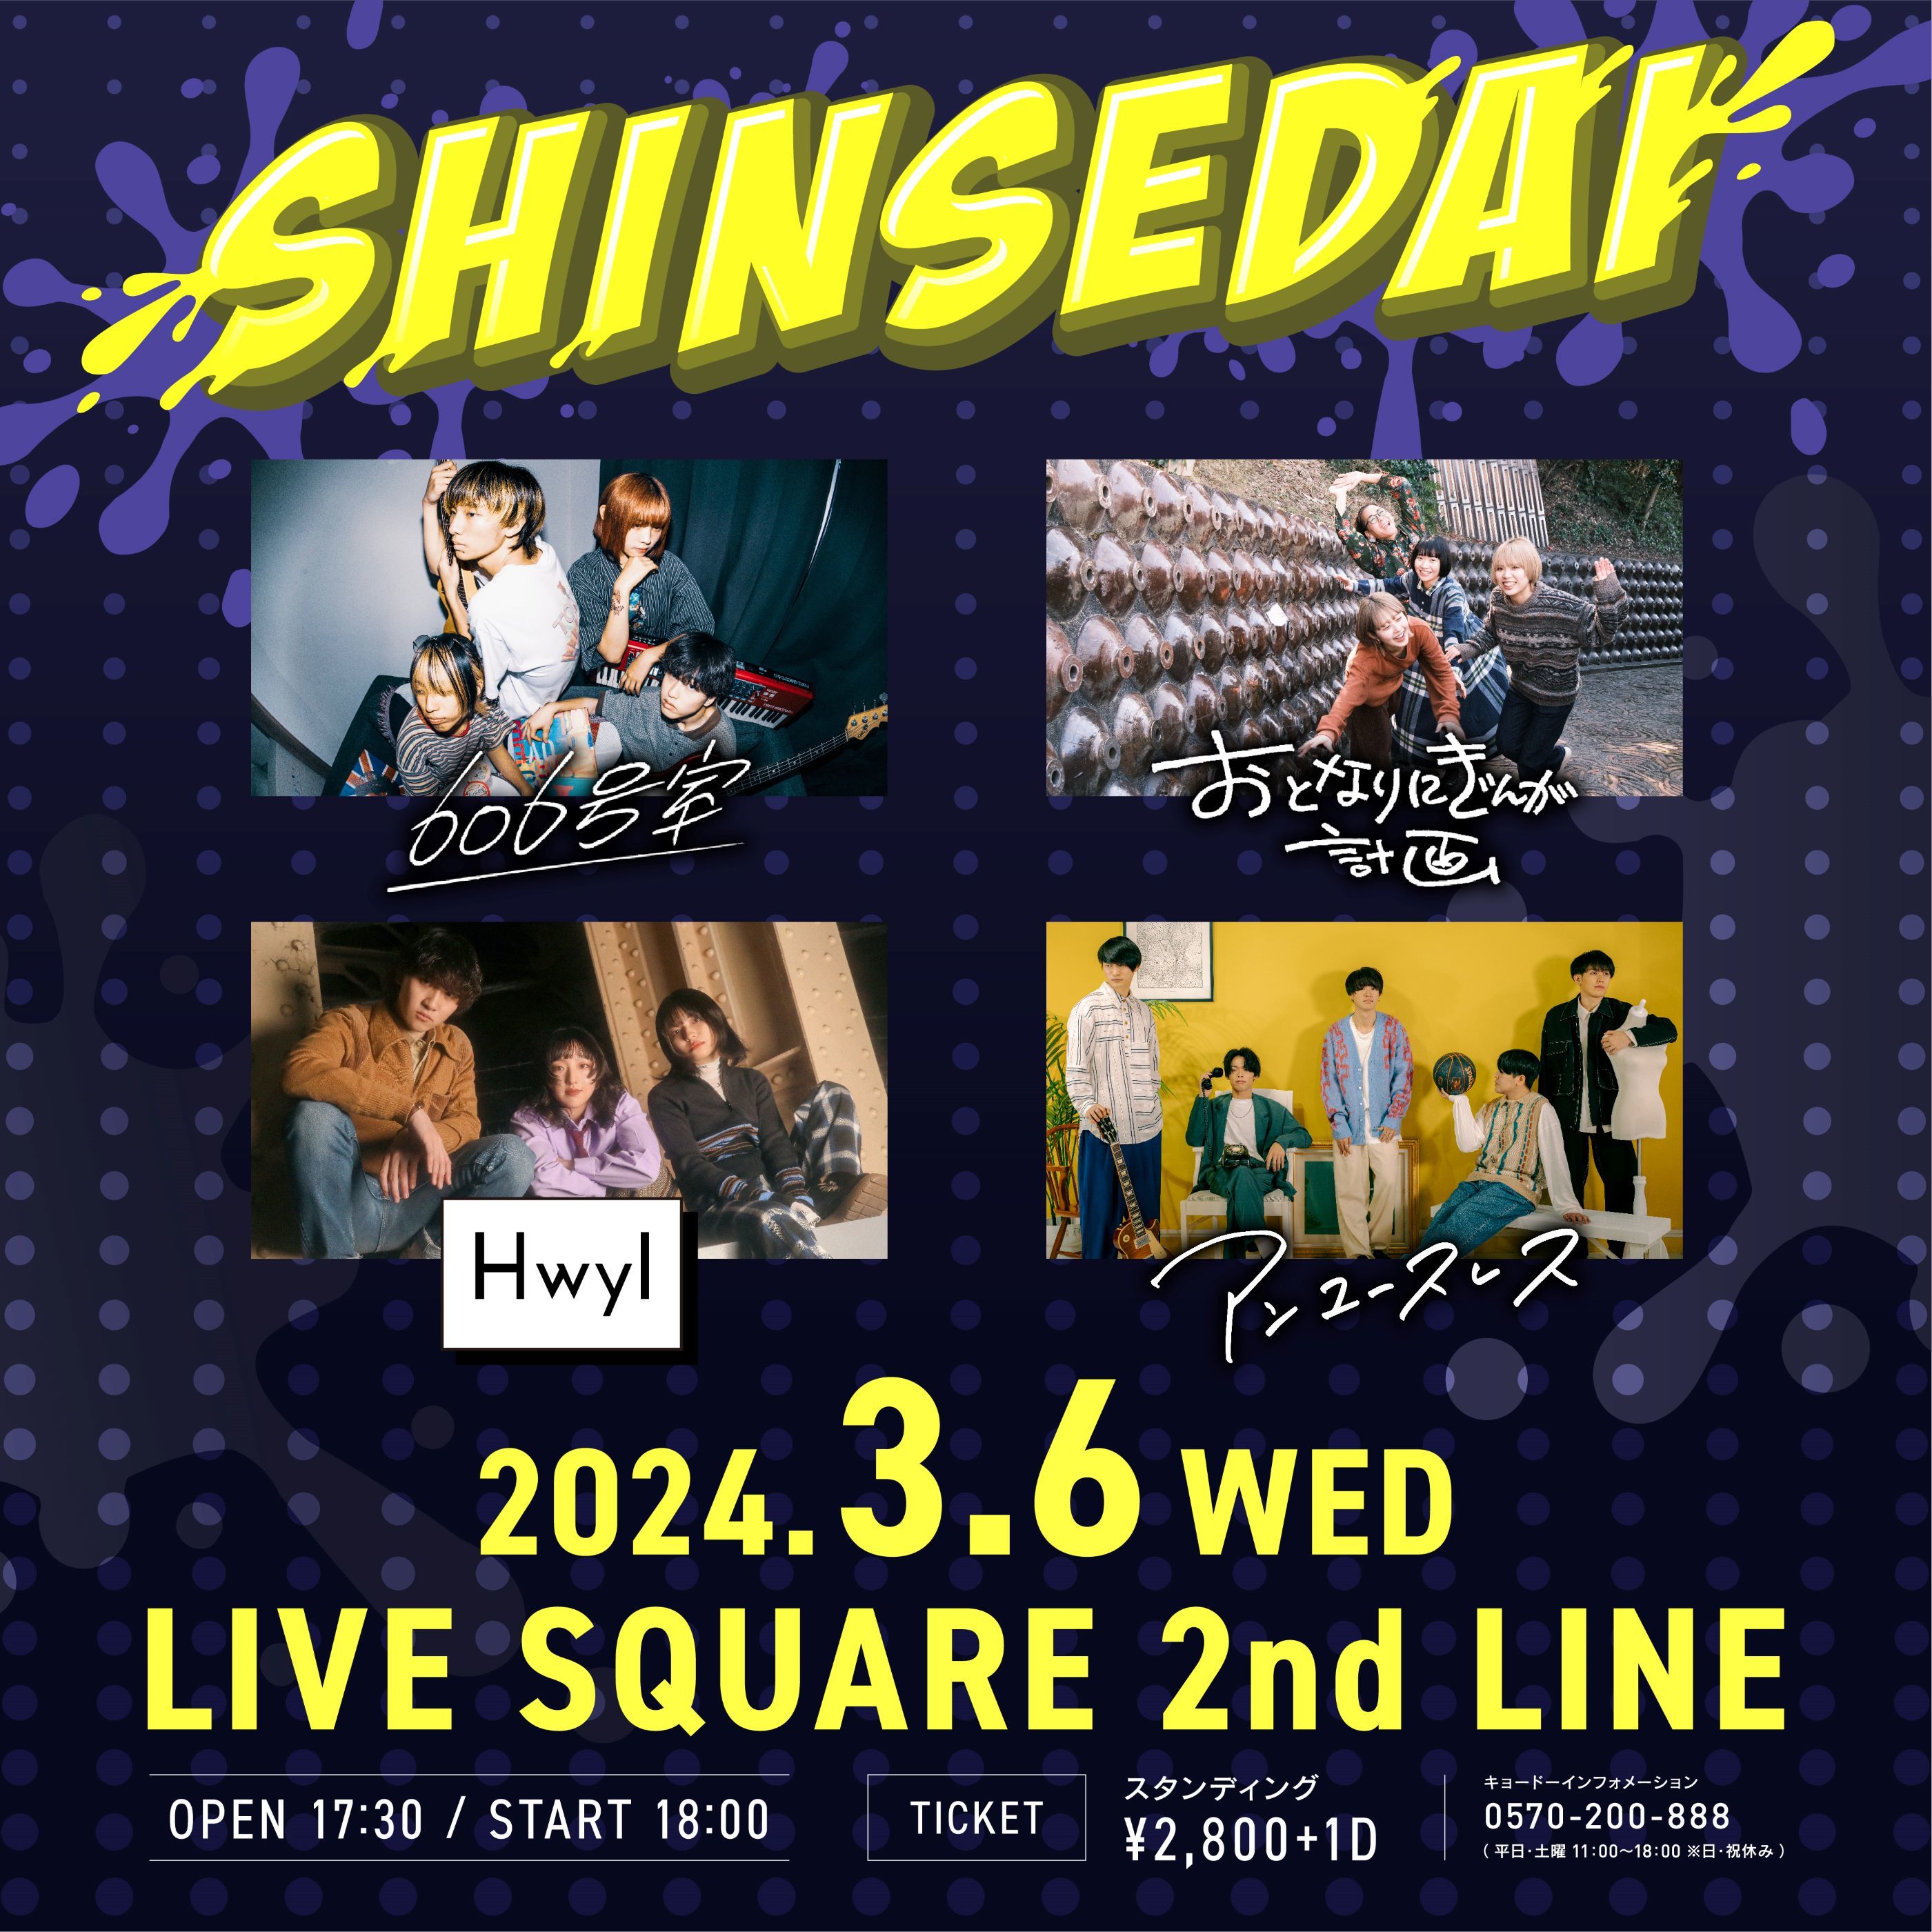 大阪で新世代バンドが集結する新イベント『SHINSEDAI』開催決定 ... - その他